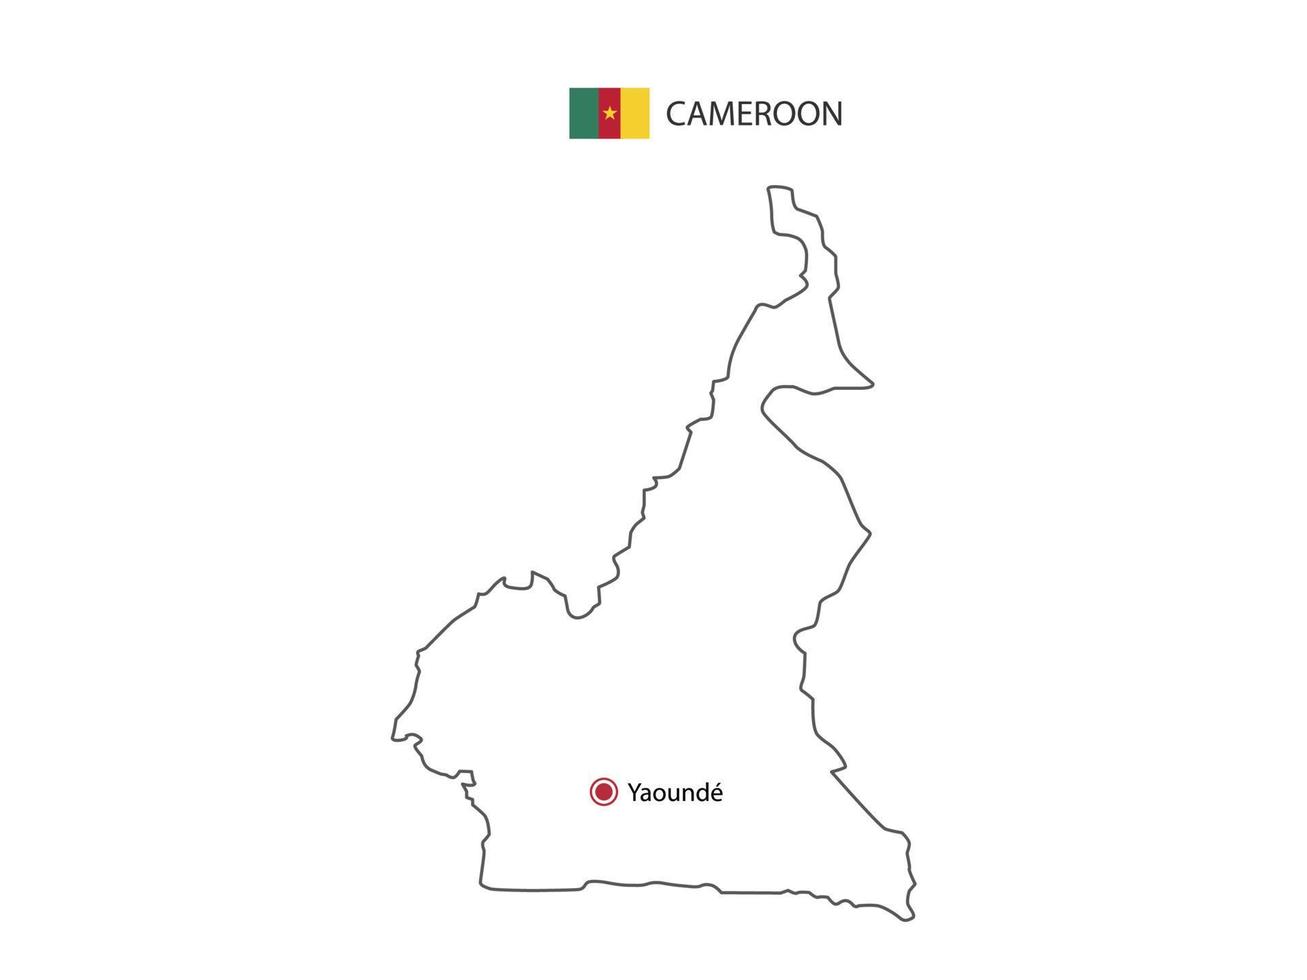 dessinez à la main un vecteur de fine ligne noire de la carte du cameroun avec la capitale yaounde sur fond blanc.